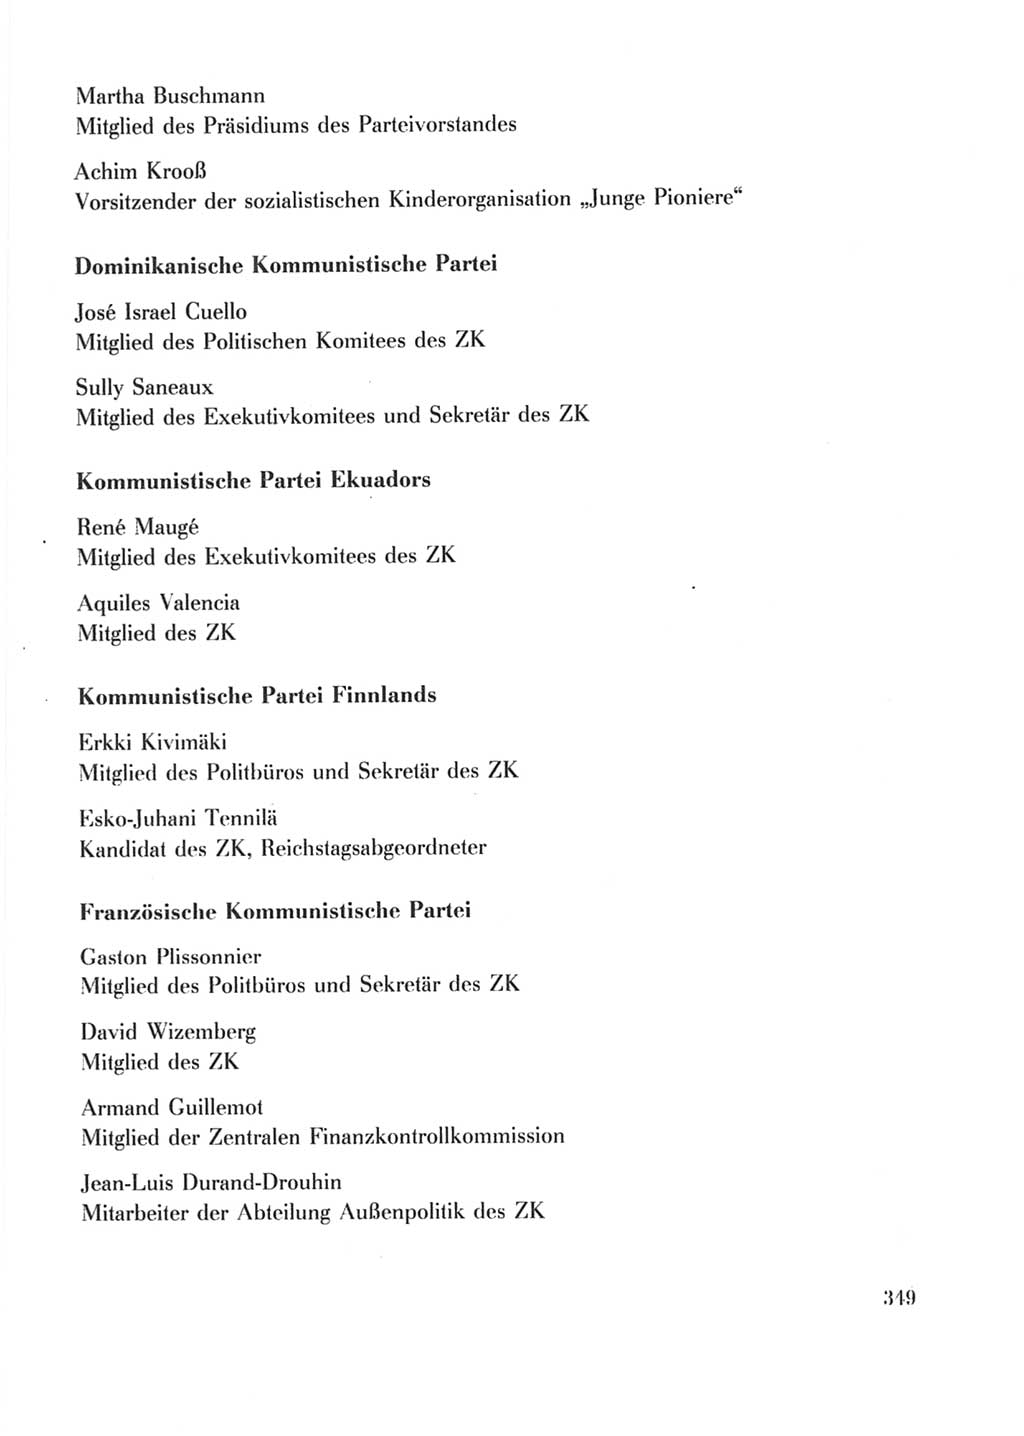 Protokoll der Verhandlungen des Ⅹ. Parteitages der Sozialistischen Einheitspartei Deutschlands (SED) [Deutsche Demokratische Republik (DDR)] 1981, Band 2, Seite 349 (Prot. Verh. Ⅹ. PT SED DDR 1981, Bd. 2, S. 349)